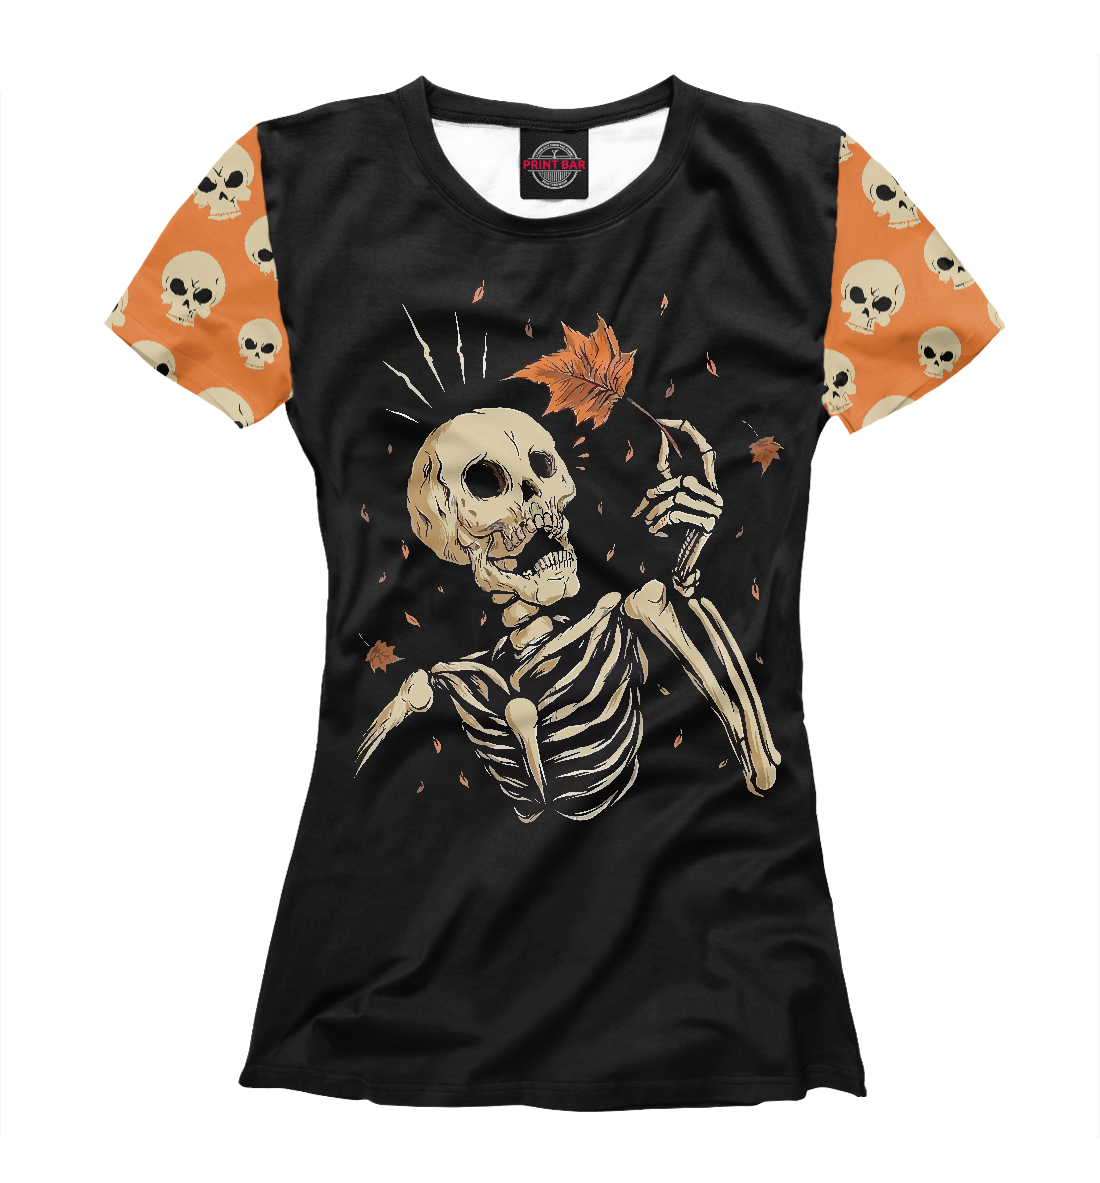 Футболка Skeleton для девочек, артикул: HAL-469915-fut-1mp